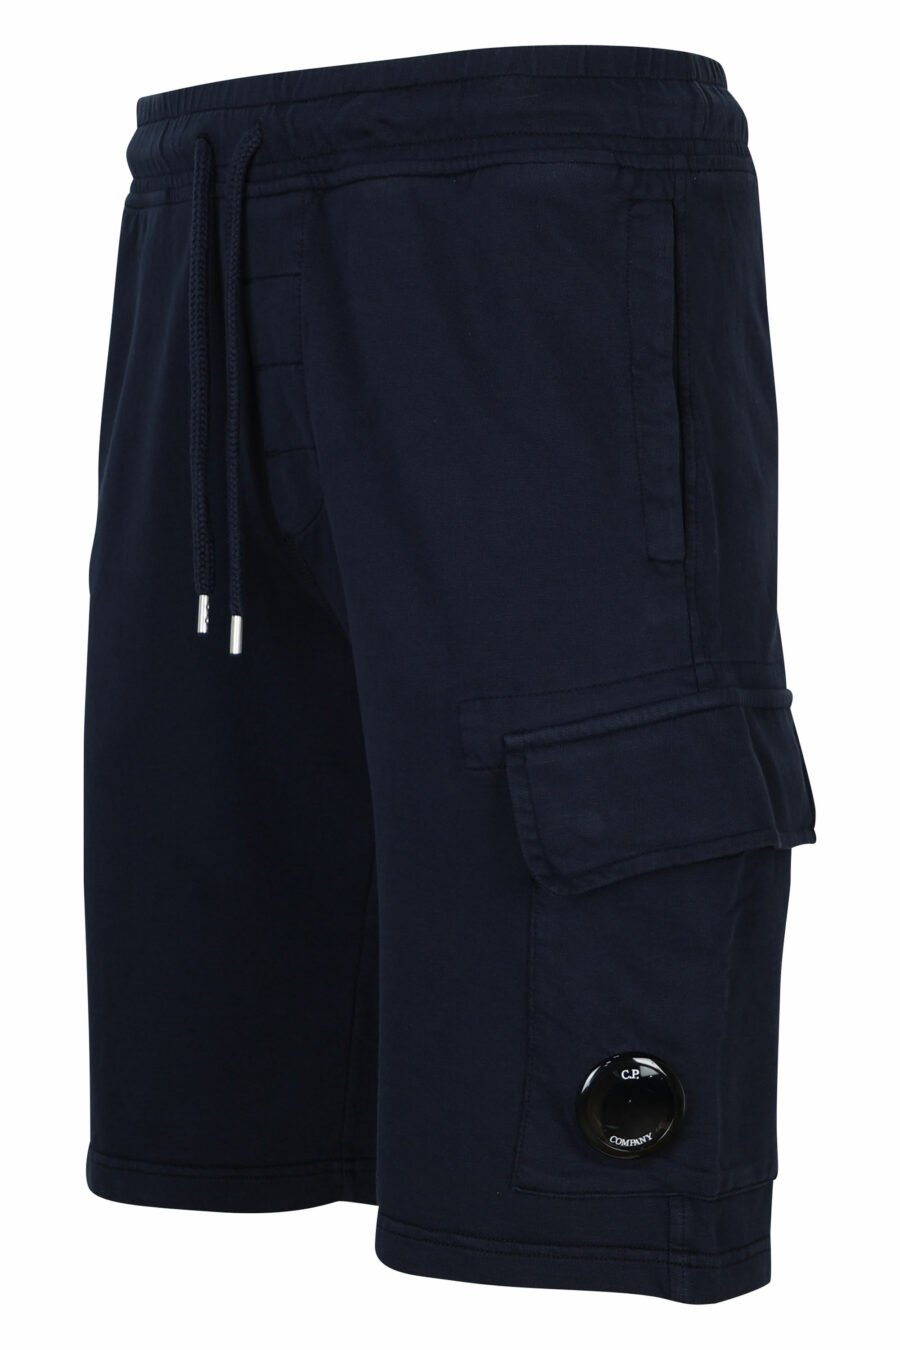 Pantalón de chándal corto azul oscuro estilo cargo con logo lente - 7620943730494 1